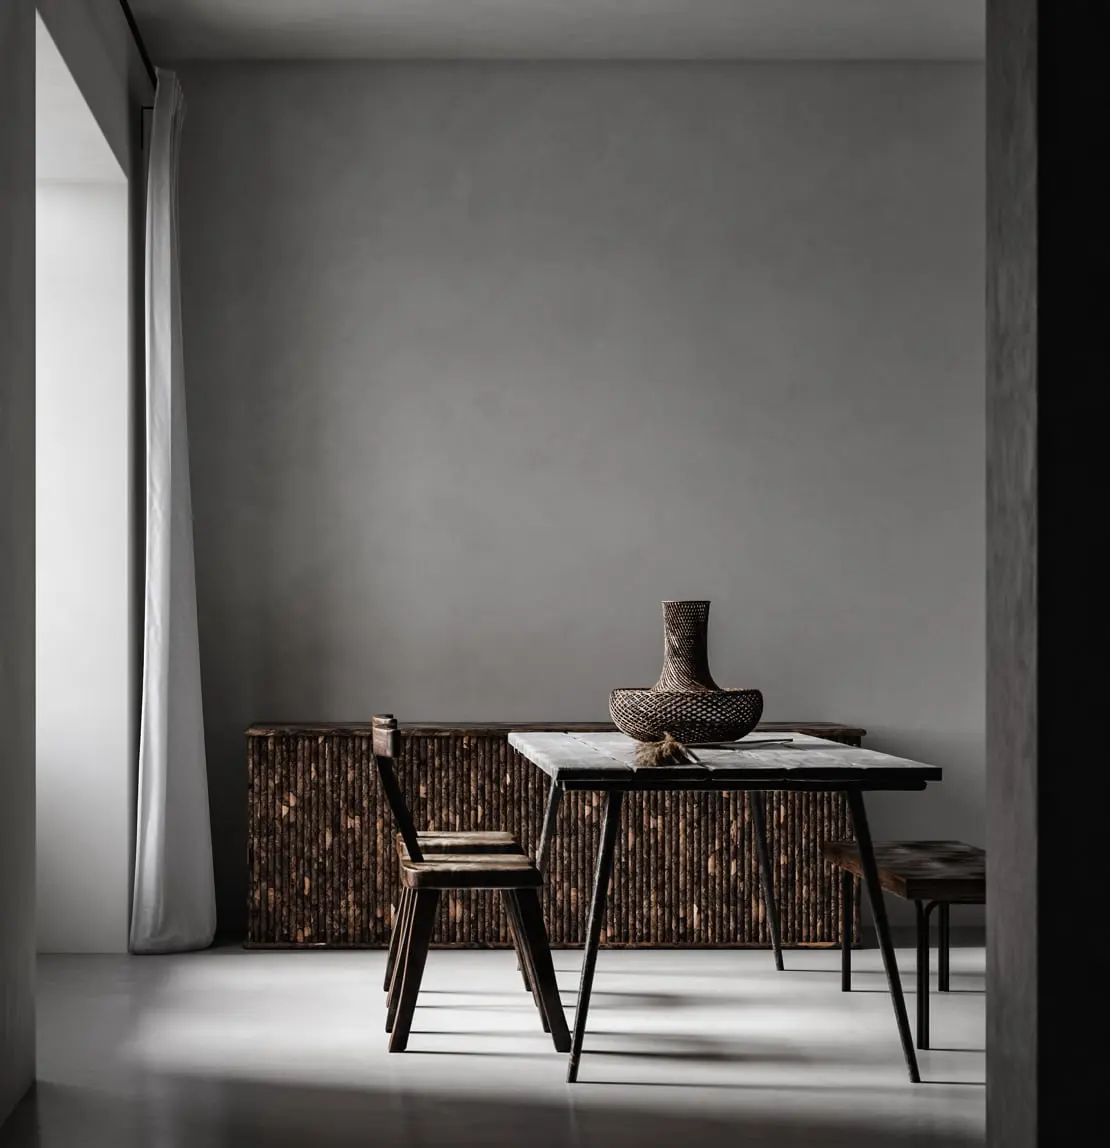 Stena iz mikrocementa v minimalistični dnevni sobi, okrašena v sivih tonih